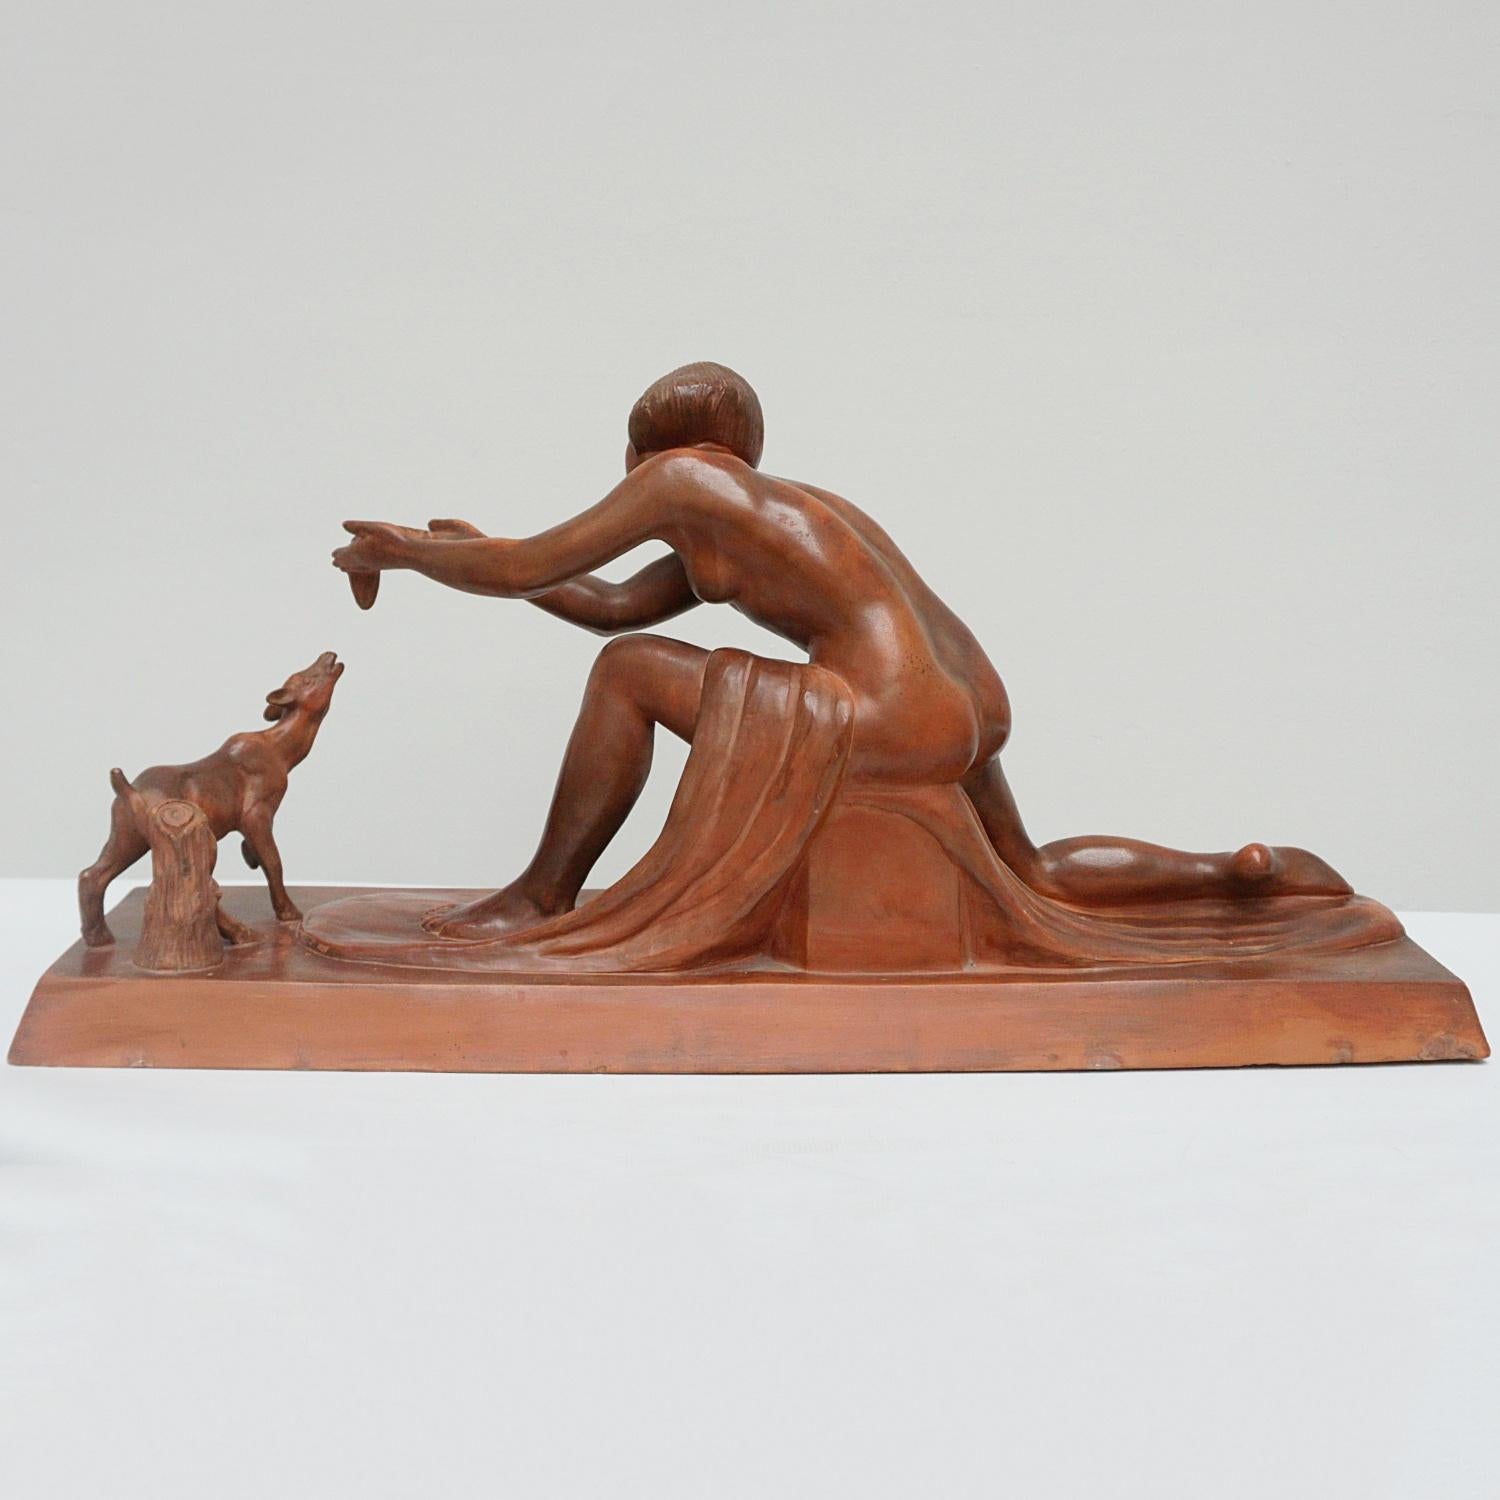 Eine Art-Deco-Terrakotta-Skulptur von Clarice Levy-Kinsbourg, die ein nacktes Mädchen darstellt, das ein junges Rehkitz füttert, wobei ihr Gewand um den Sockel drapiert ist. Signiert 